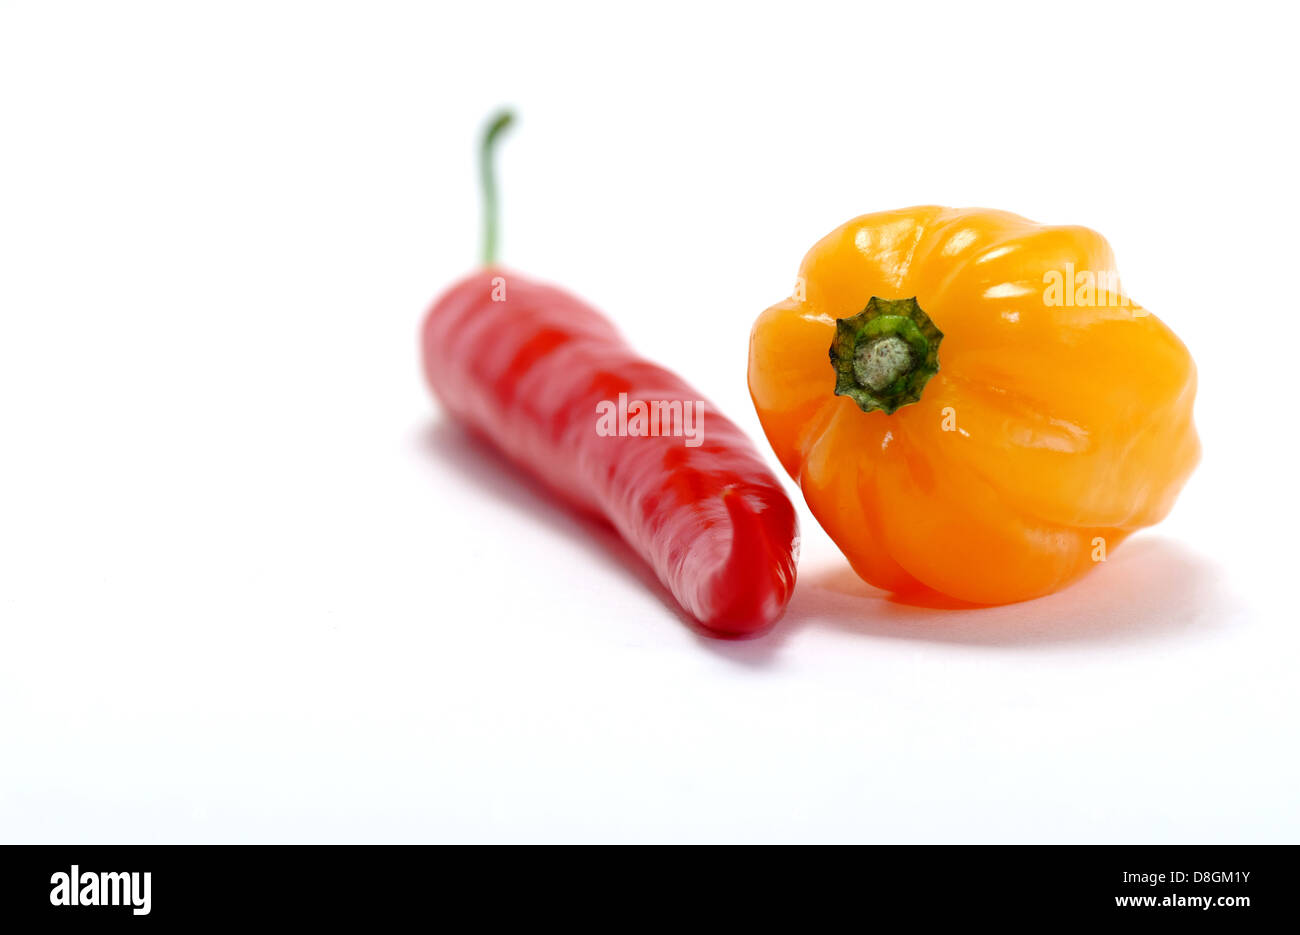 Orange, Habanero, Red Pepper, Stock Photo